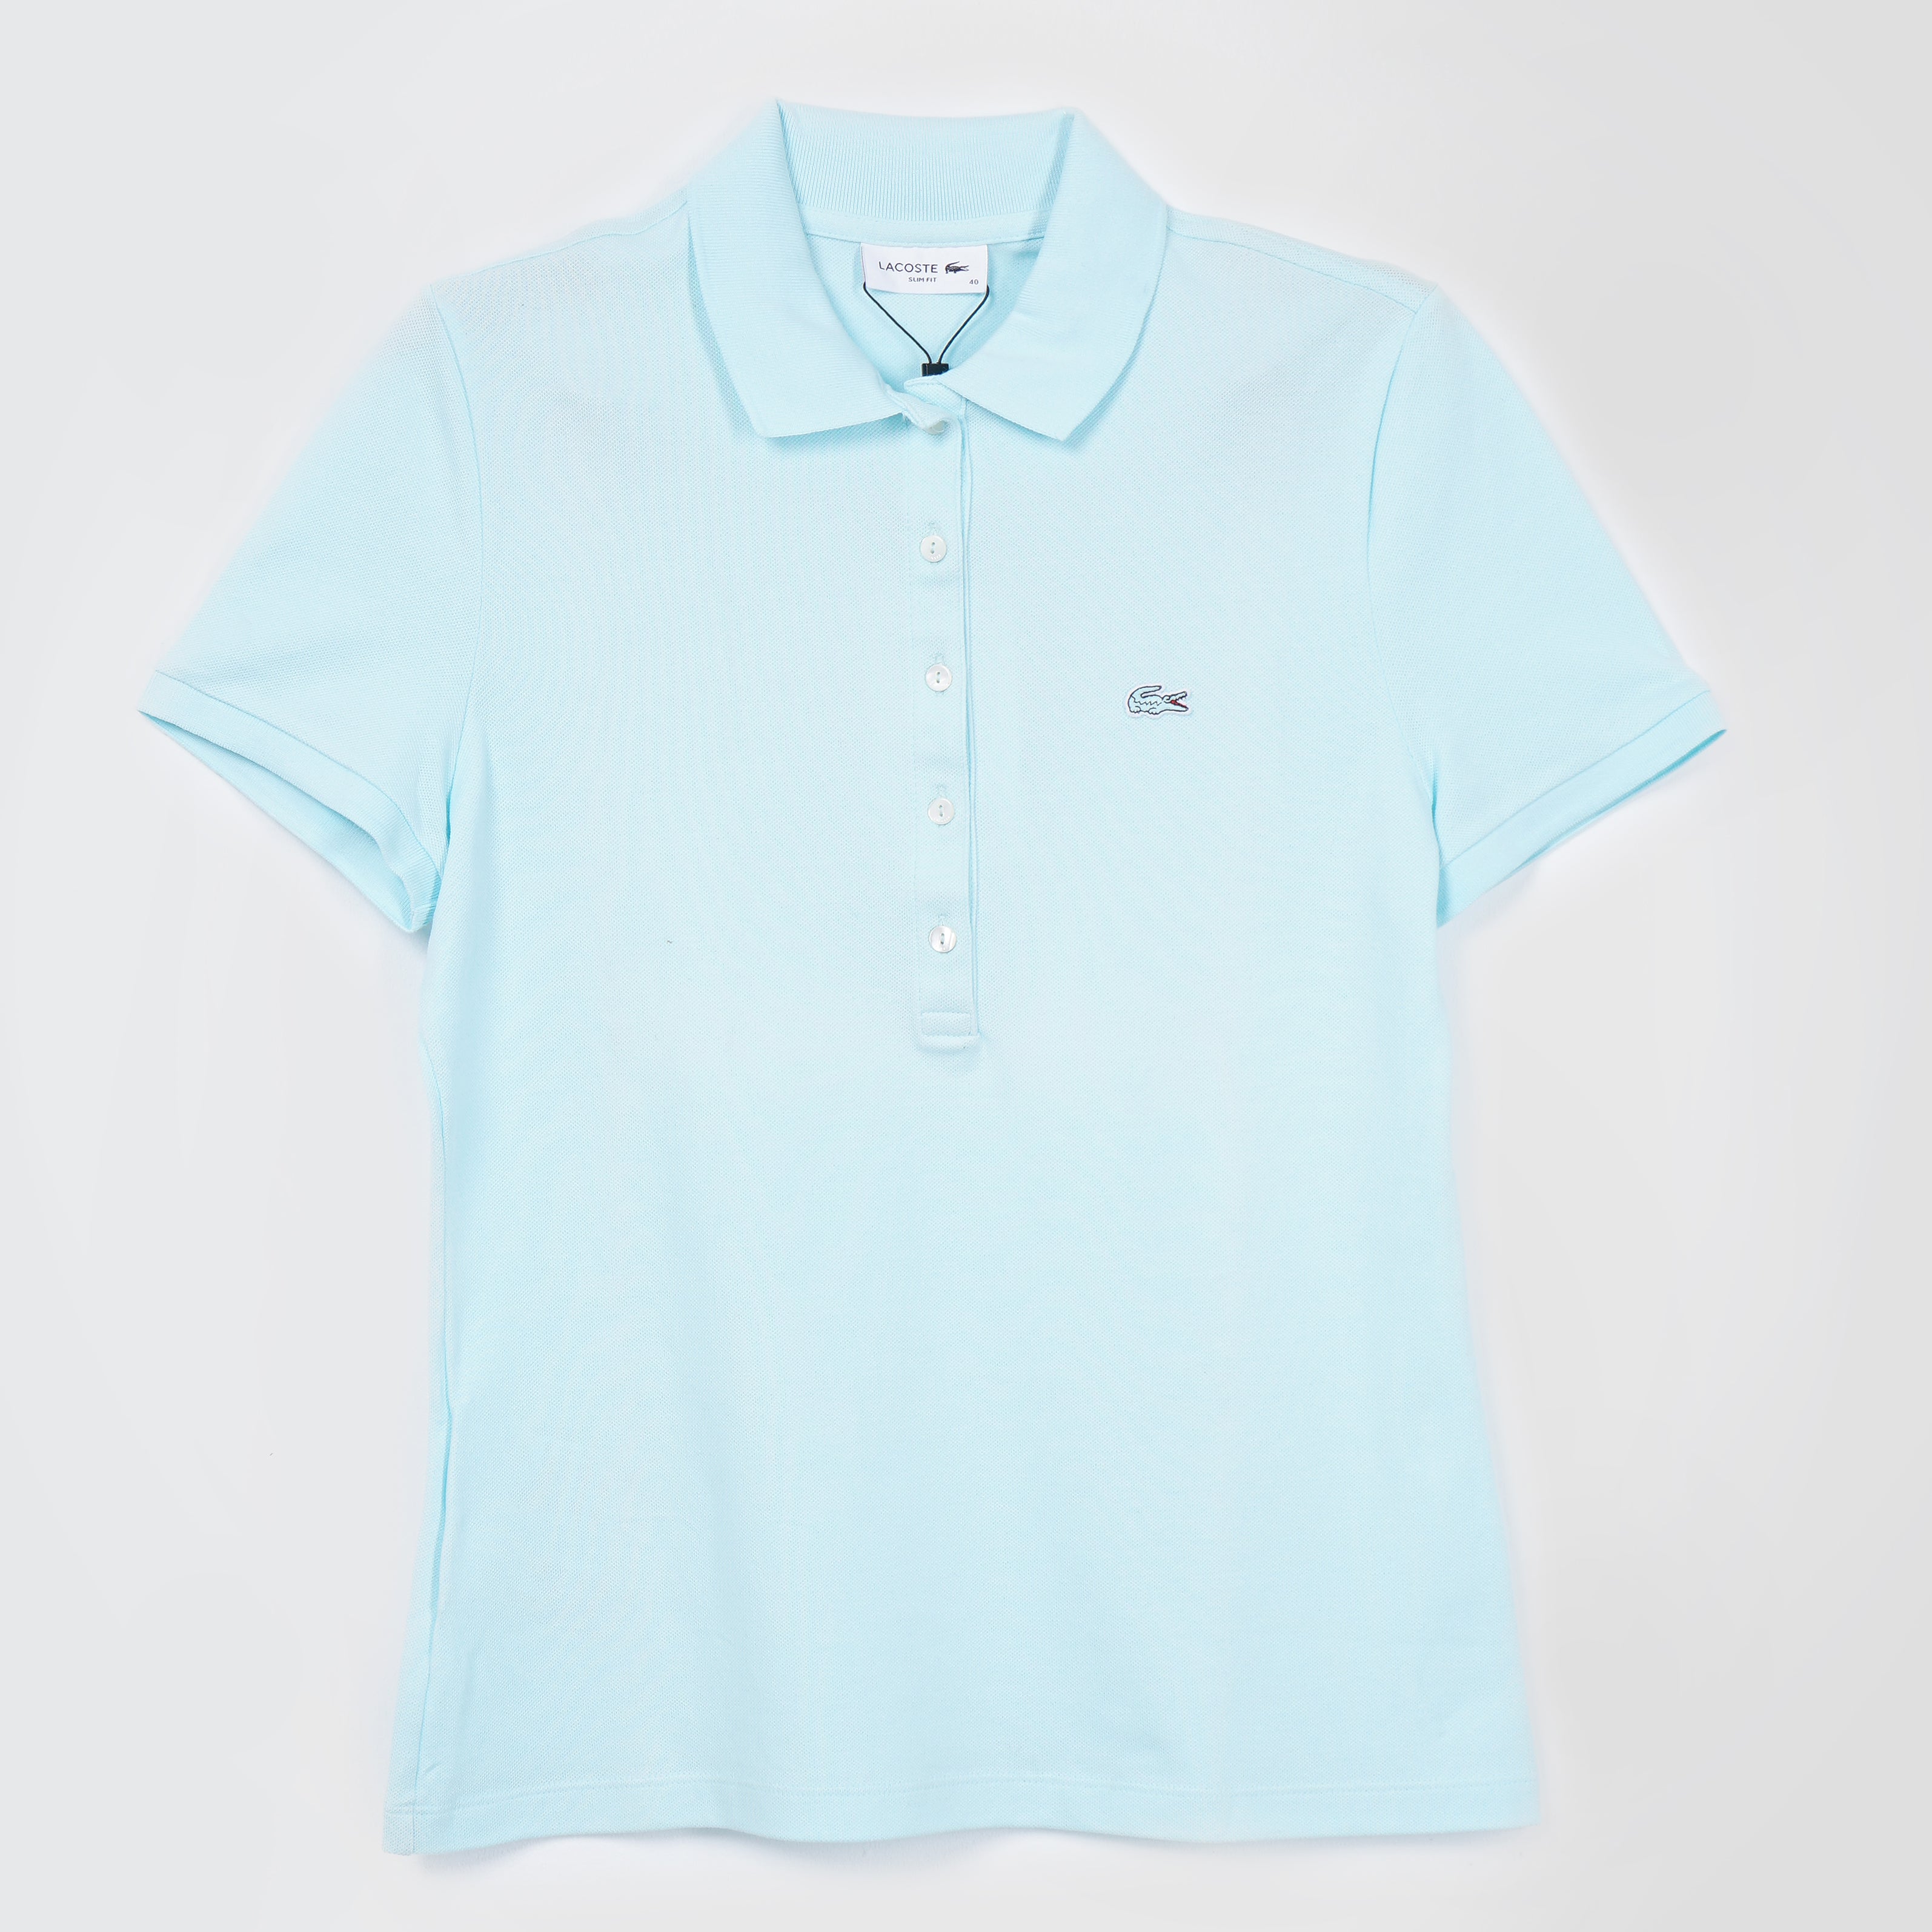 Lacoste Polo Shirt (Slim Fit) - Marca Deals - Lacoste